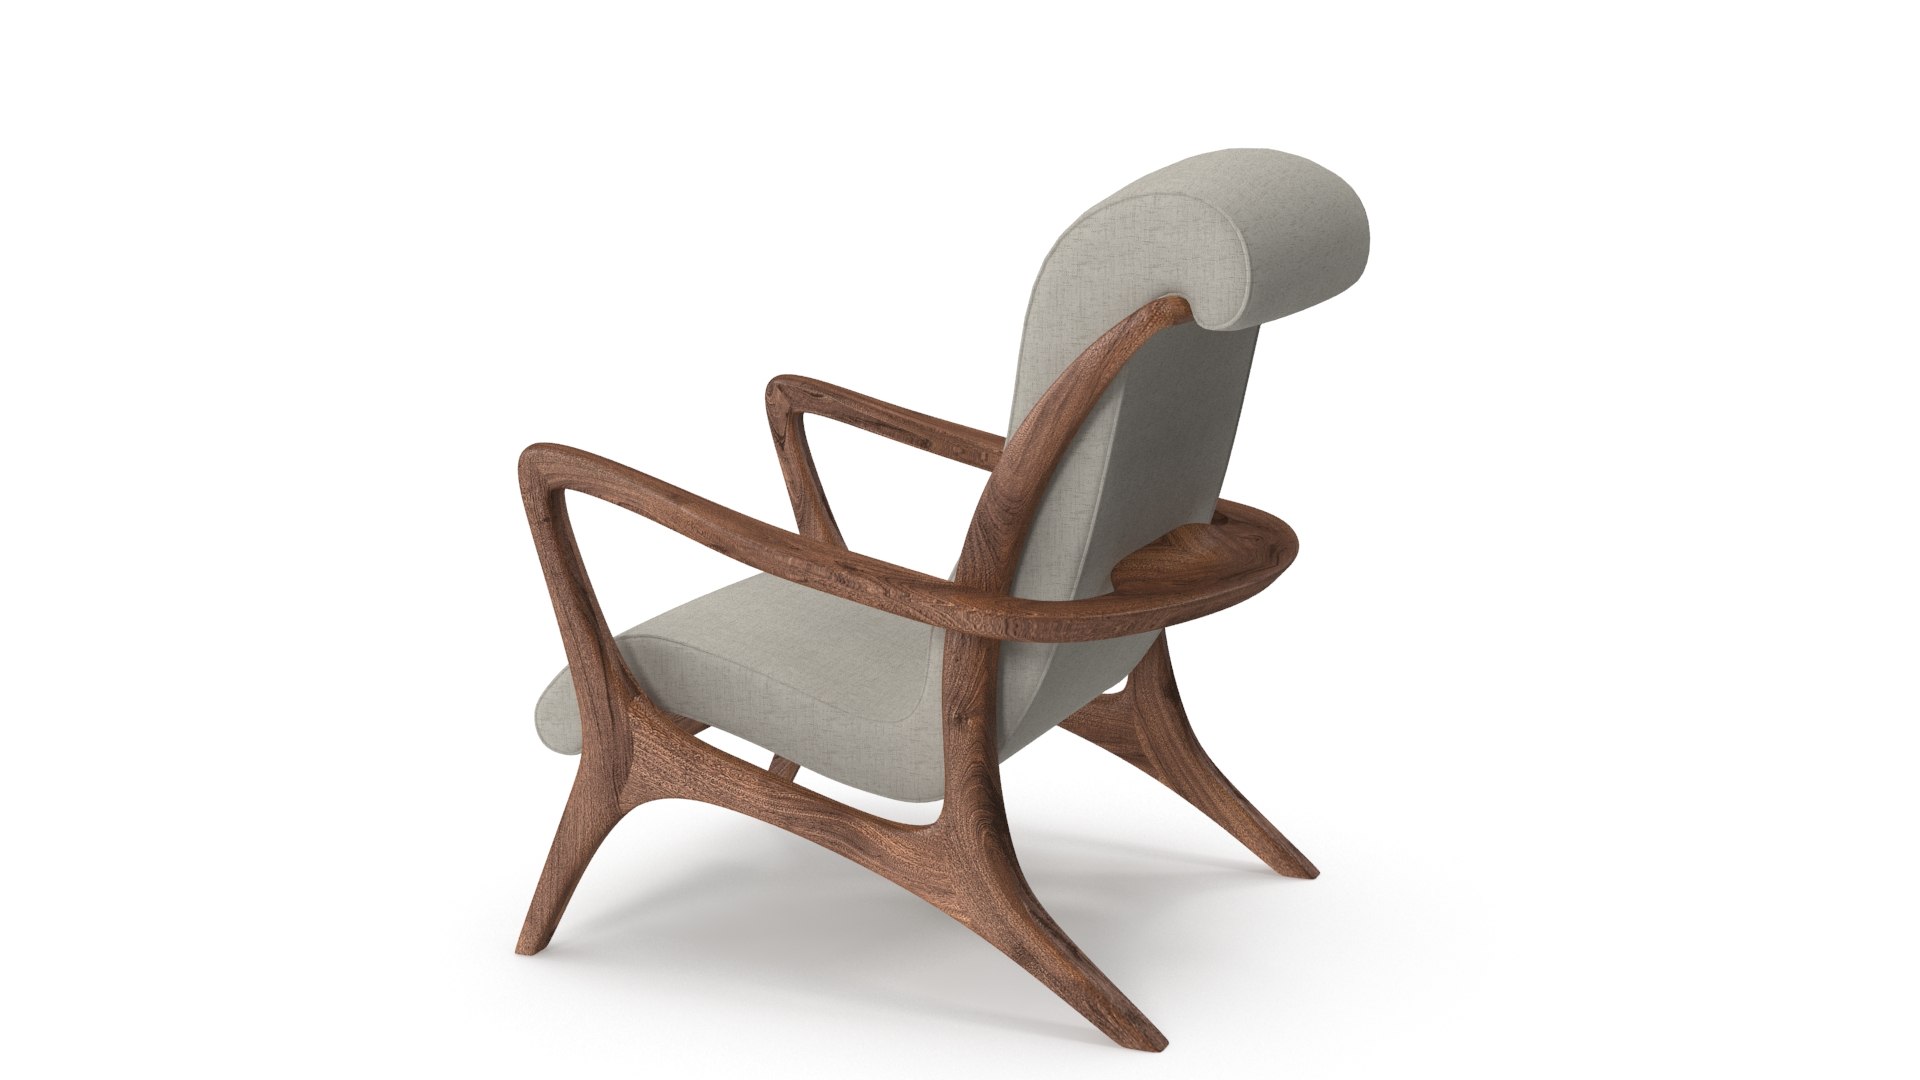 Lounge chair vladmir kagan 3D model - TurboSquid 1436882